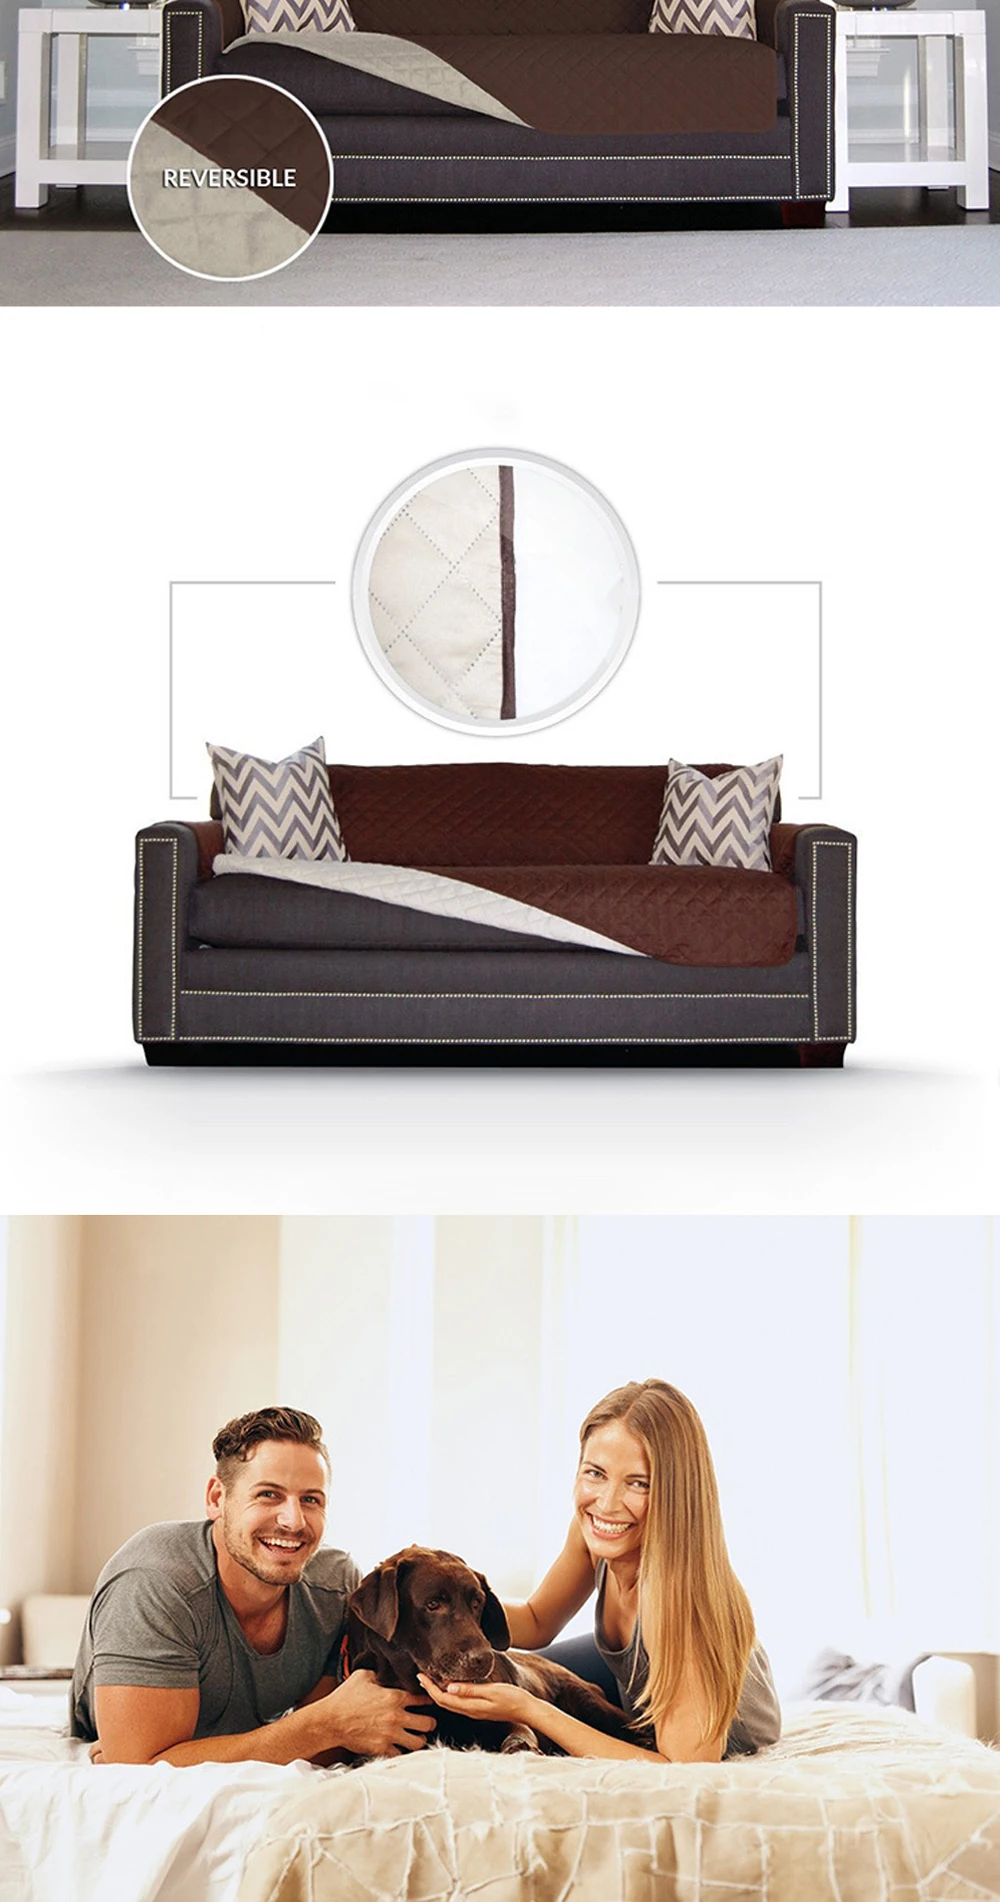 Супер эластичные модные диванную подушку двусторонний мягкий бархат покрытие дивана для животных Водонепроницаемый машинная стирка диван Ipad Mini 1/2/3 местный